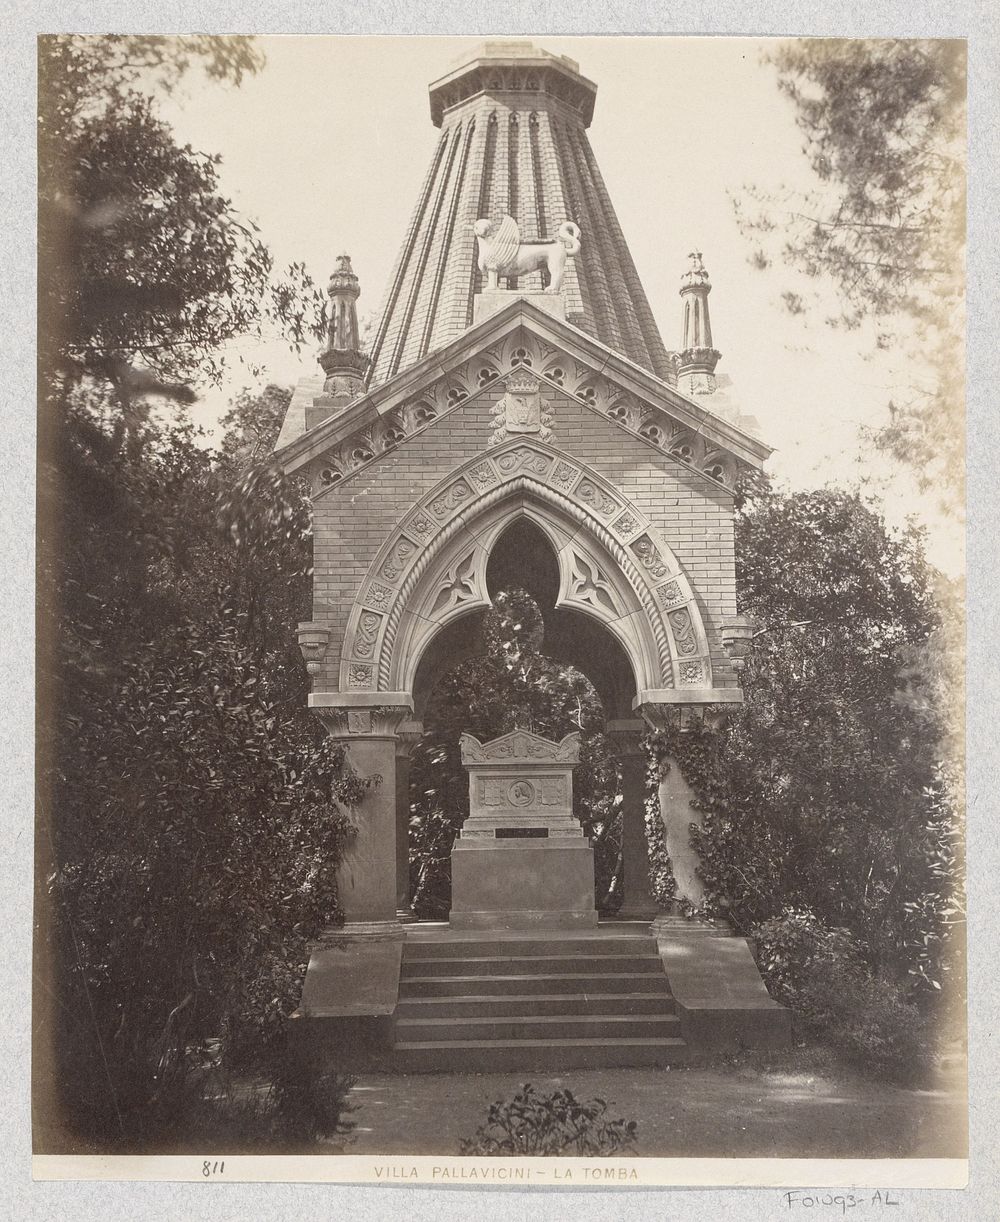 Tombe in de tuin van Villa Pallavicini in Pegli (c. 1870 - c. 1890) by Celestino Degoix